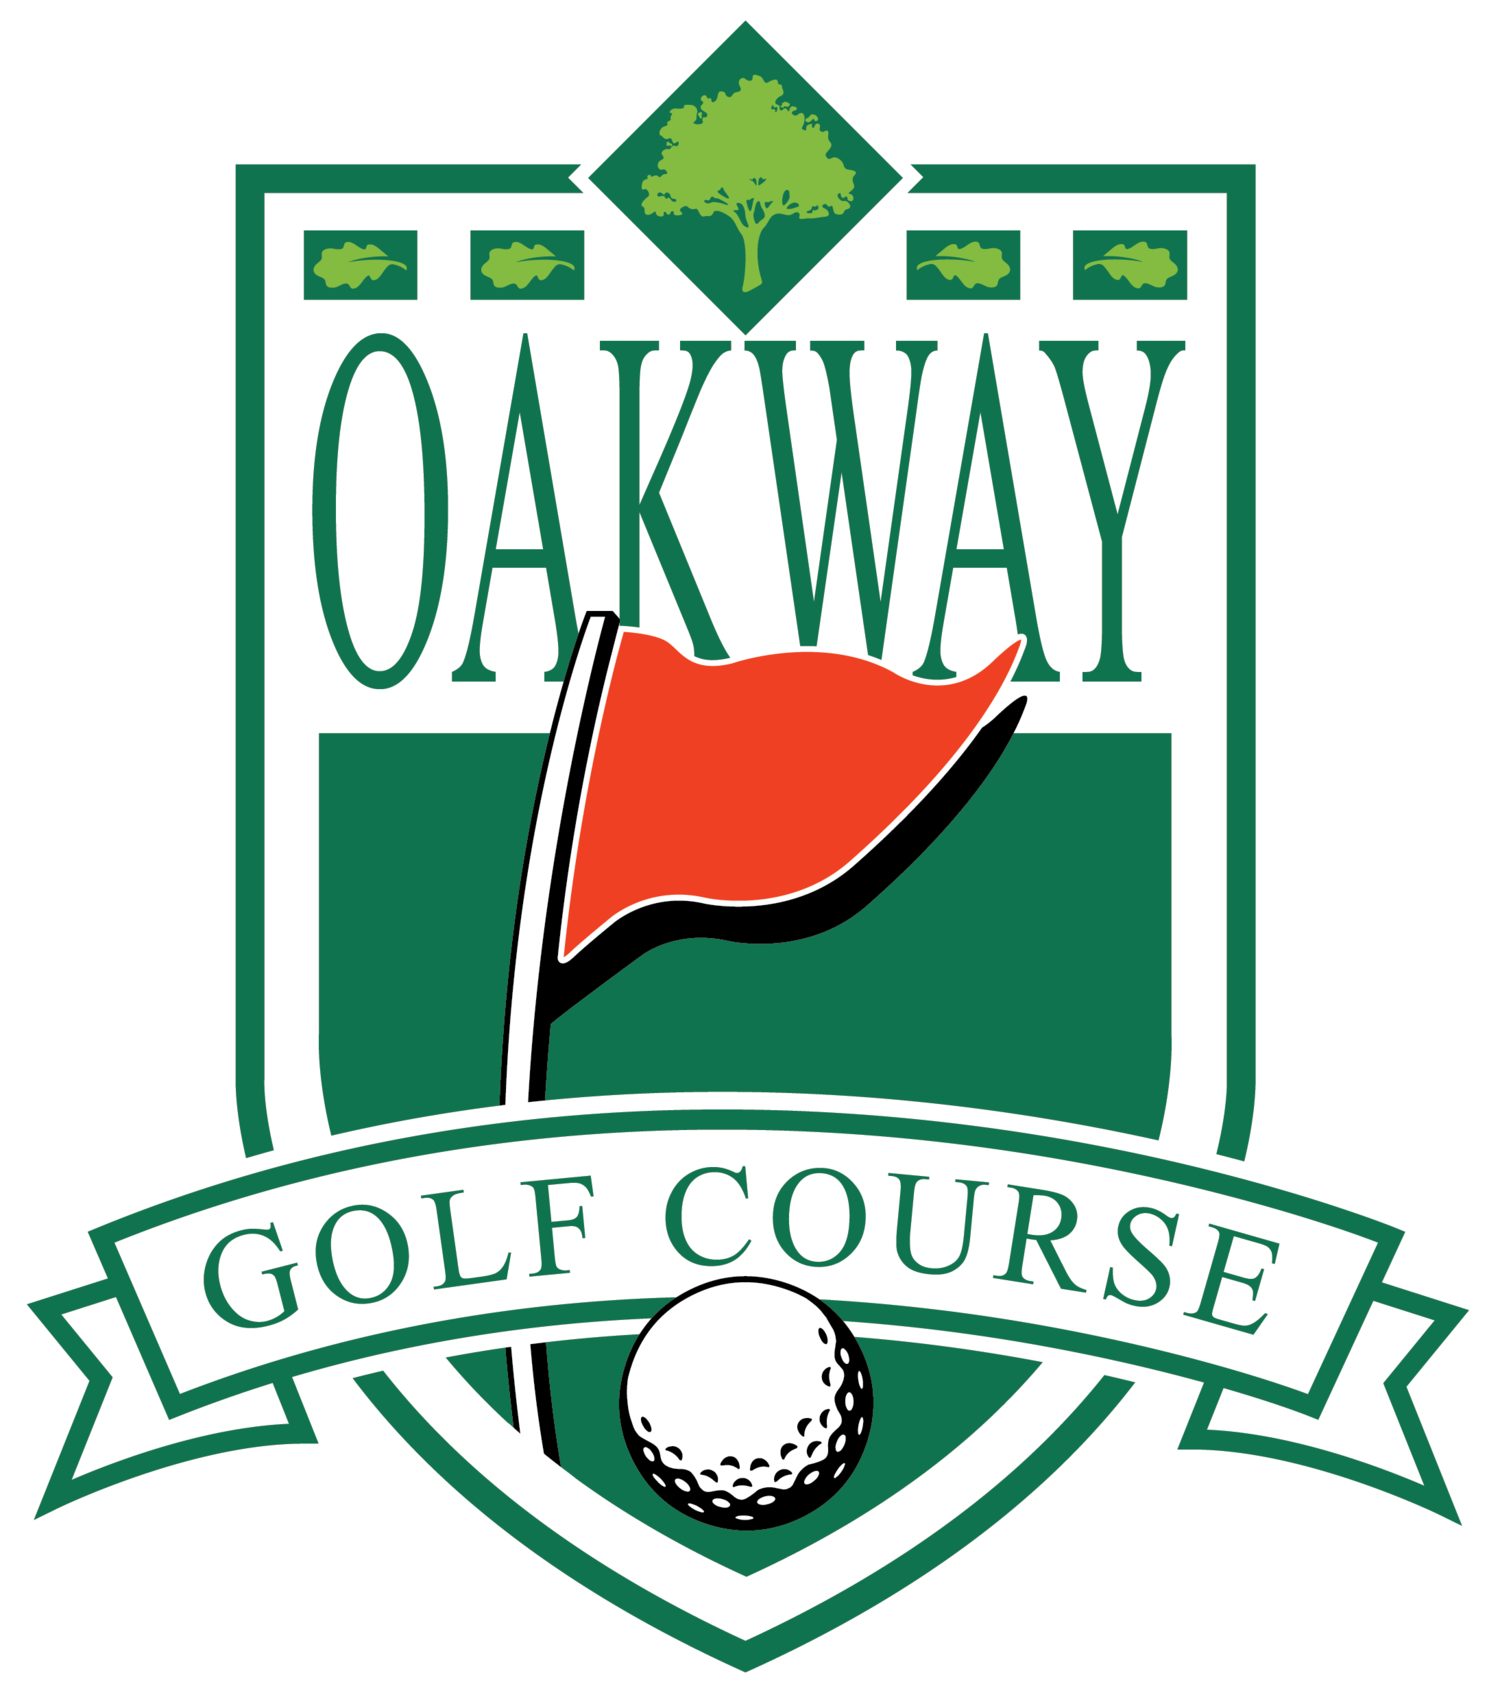 Oakway Golf Course